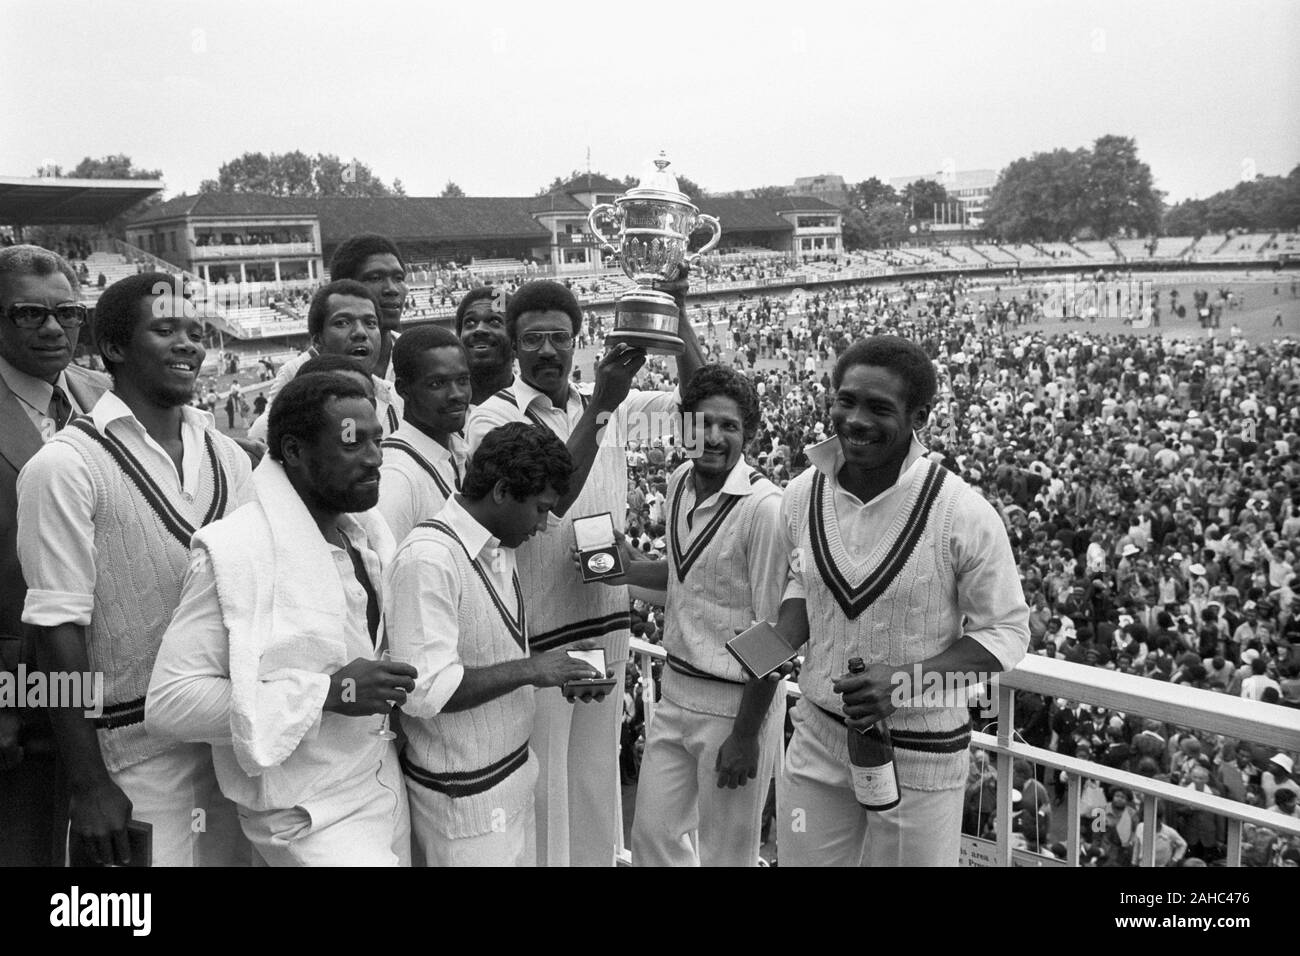 Photo de fichier en date du 23-06-1979 de Clive Lloyd, le capitaine West Indies, entouré de ses joueurs puisqu'il affiche le Prudential Cup au Seigneur ce soir. Antilles avait conservé la tasse avec une victoire sur l'Angleterre 92 s'exécute dans la finale. Banque D'Images